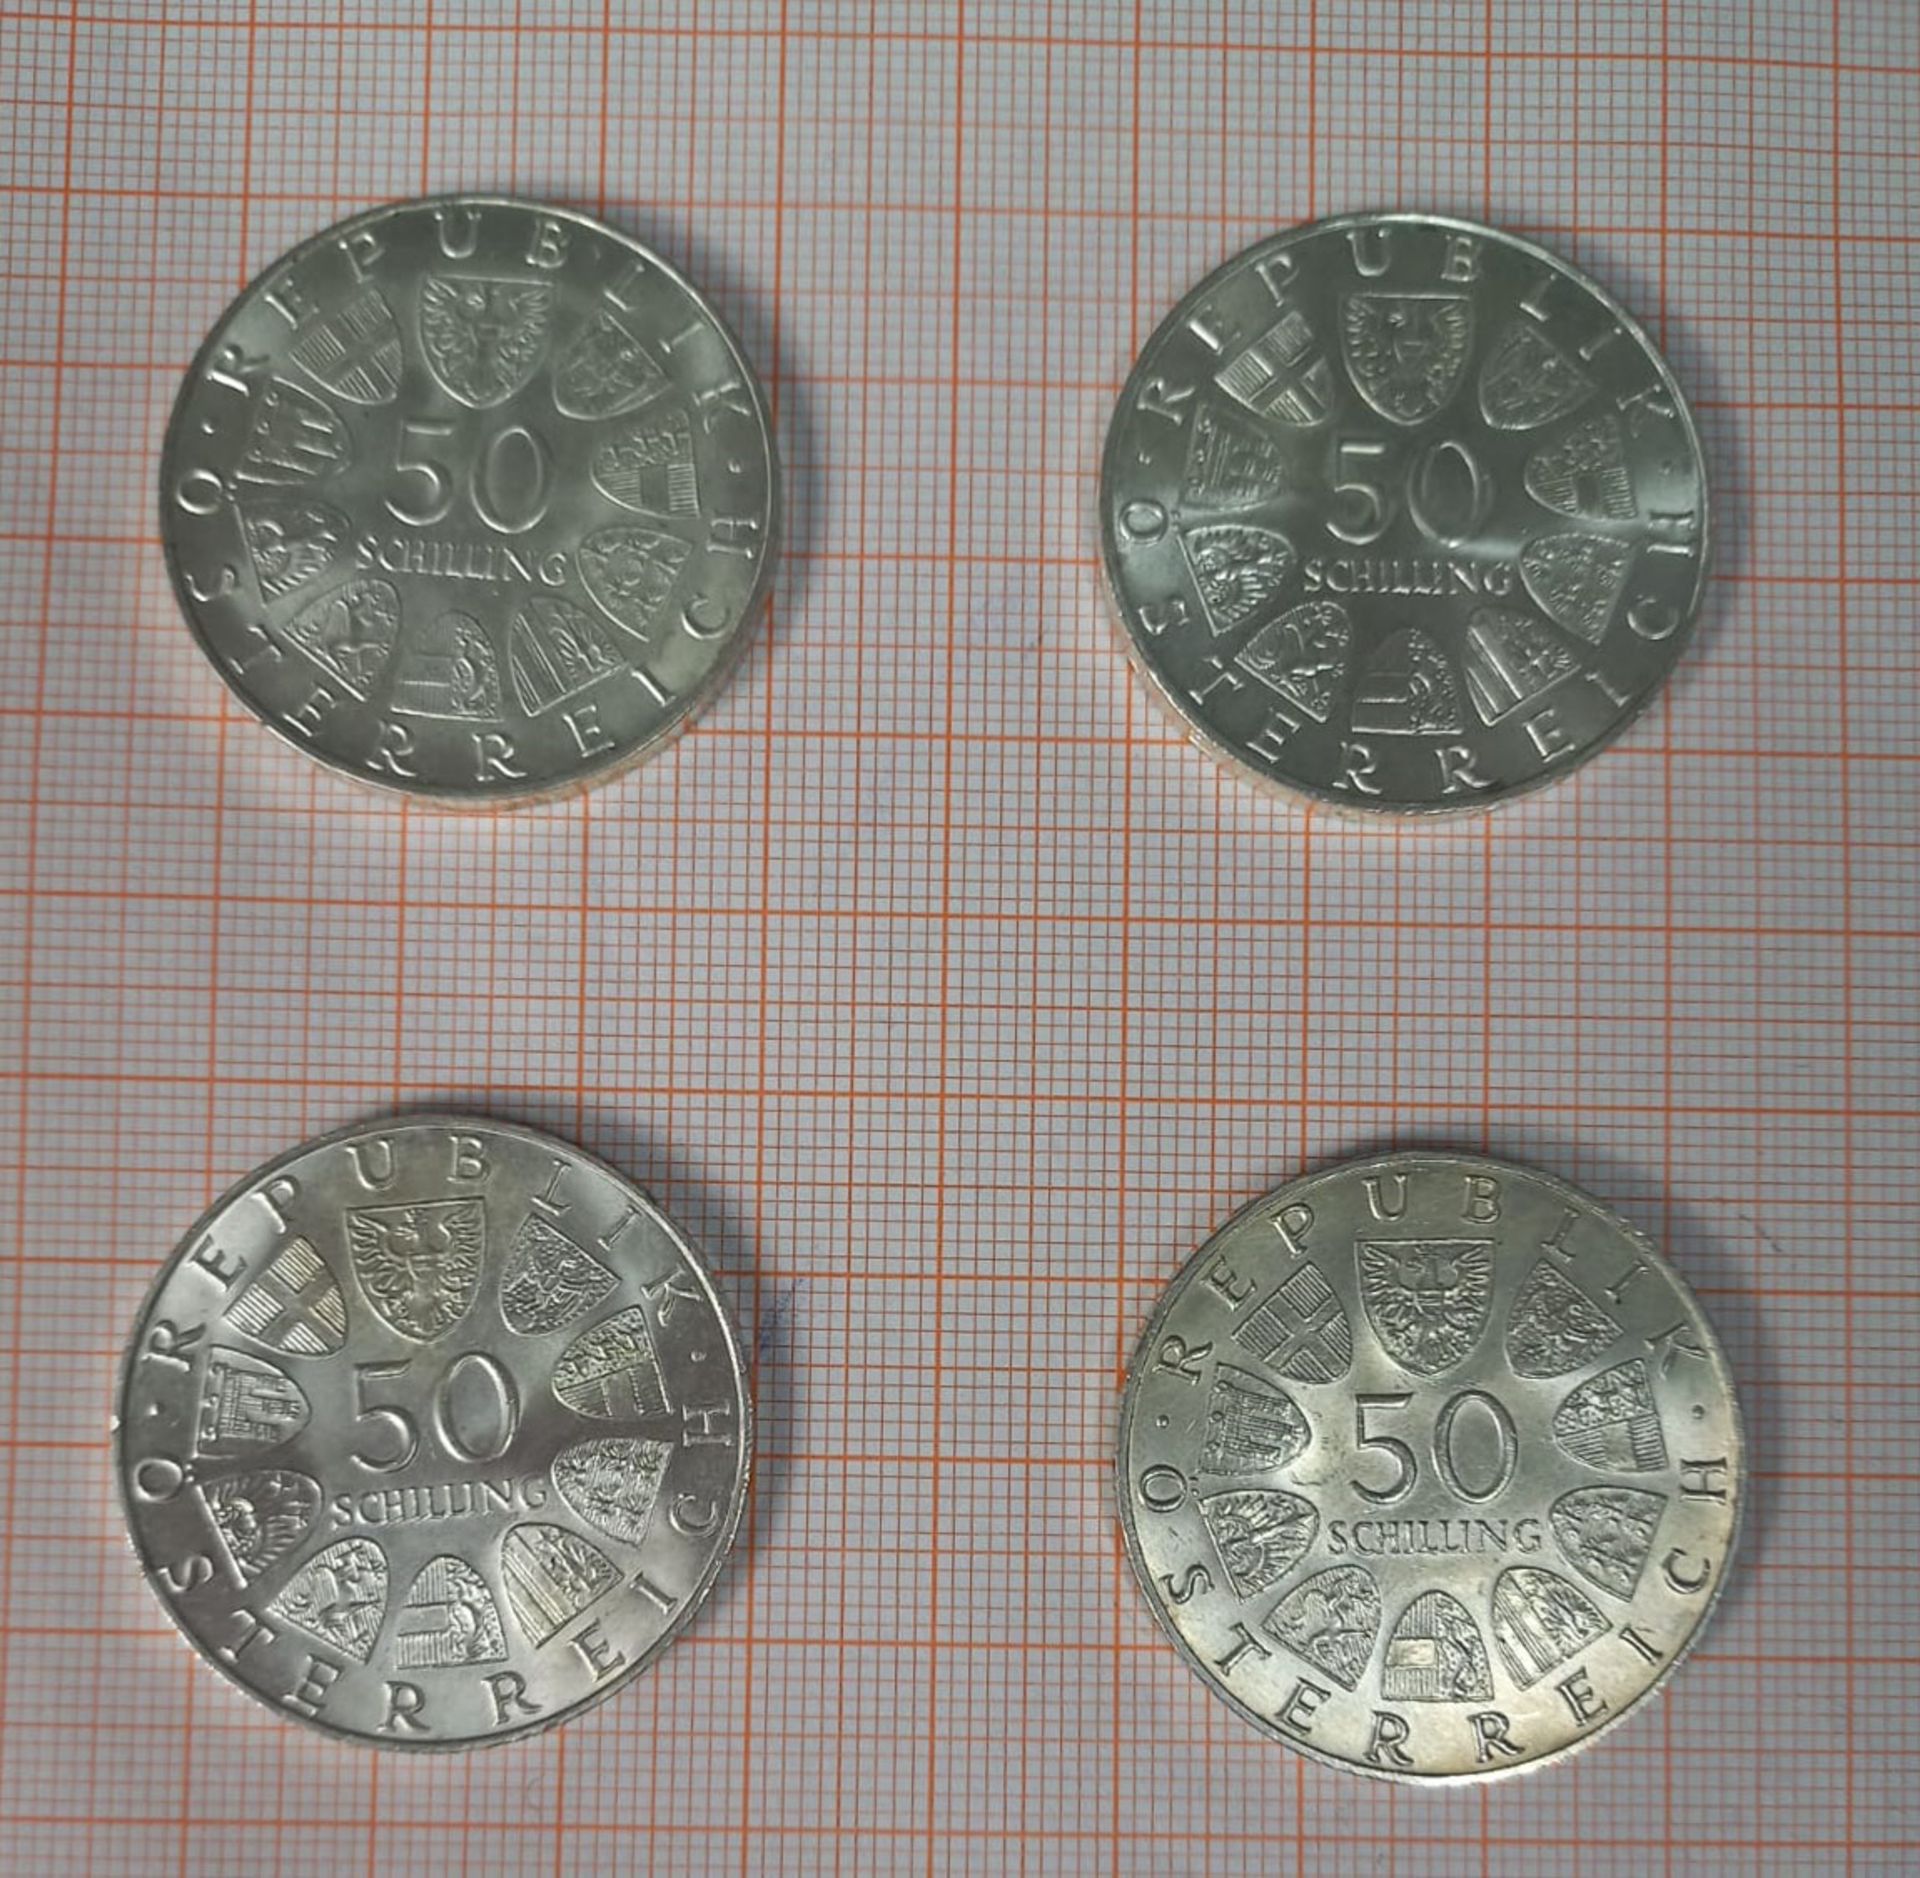 43 Silbermünzen á 50 Schilling. Republik Österreich. - Image 10 of 10